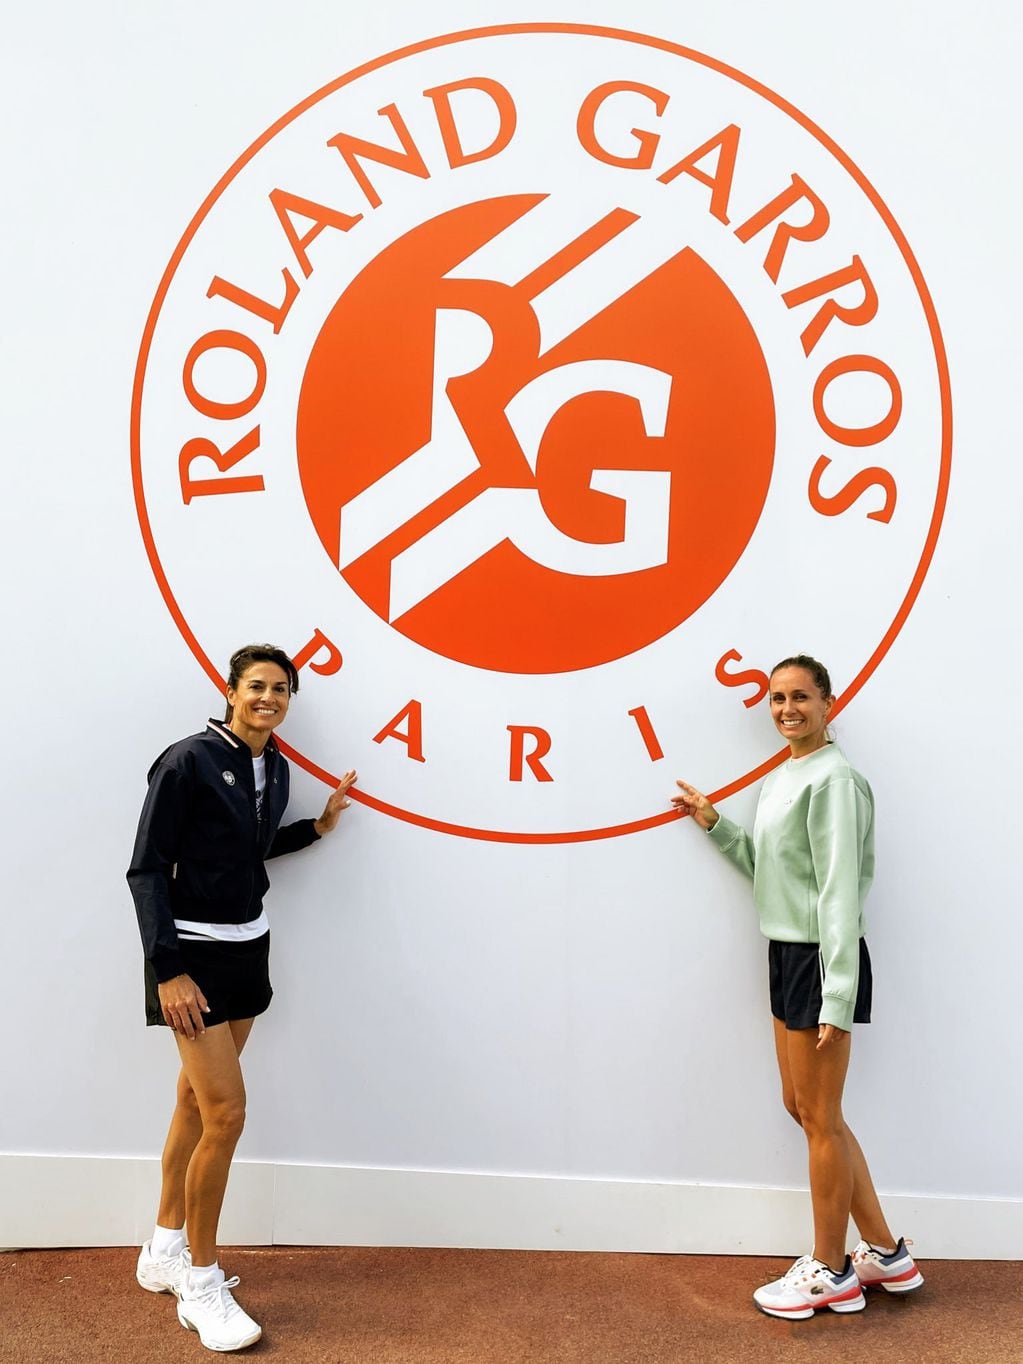 Gabriela Sabatini y Gisela Dulko disputarán el torneo de dobles de leyendas de Roland Garros.